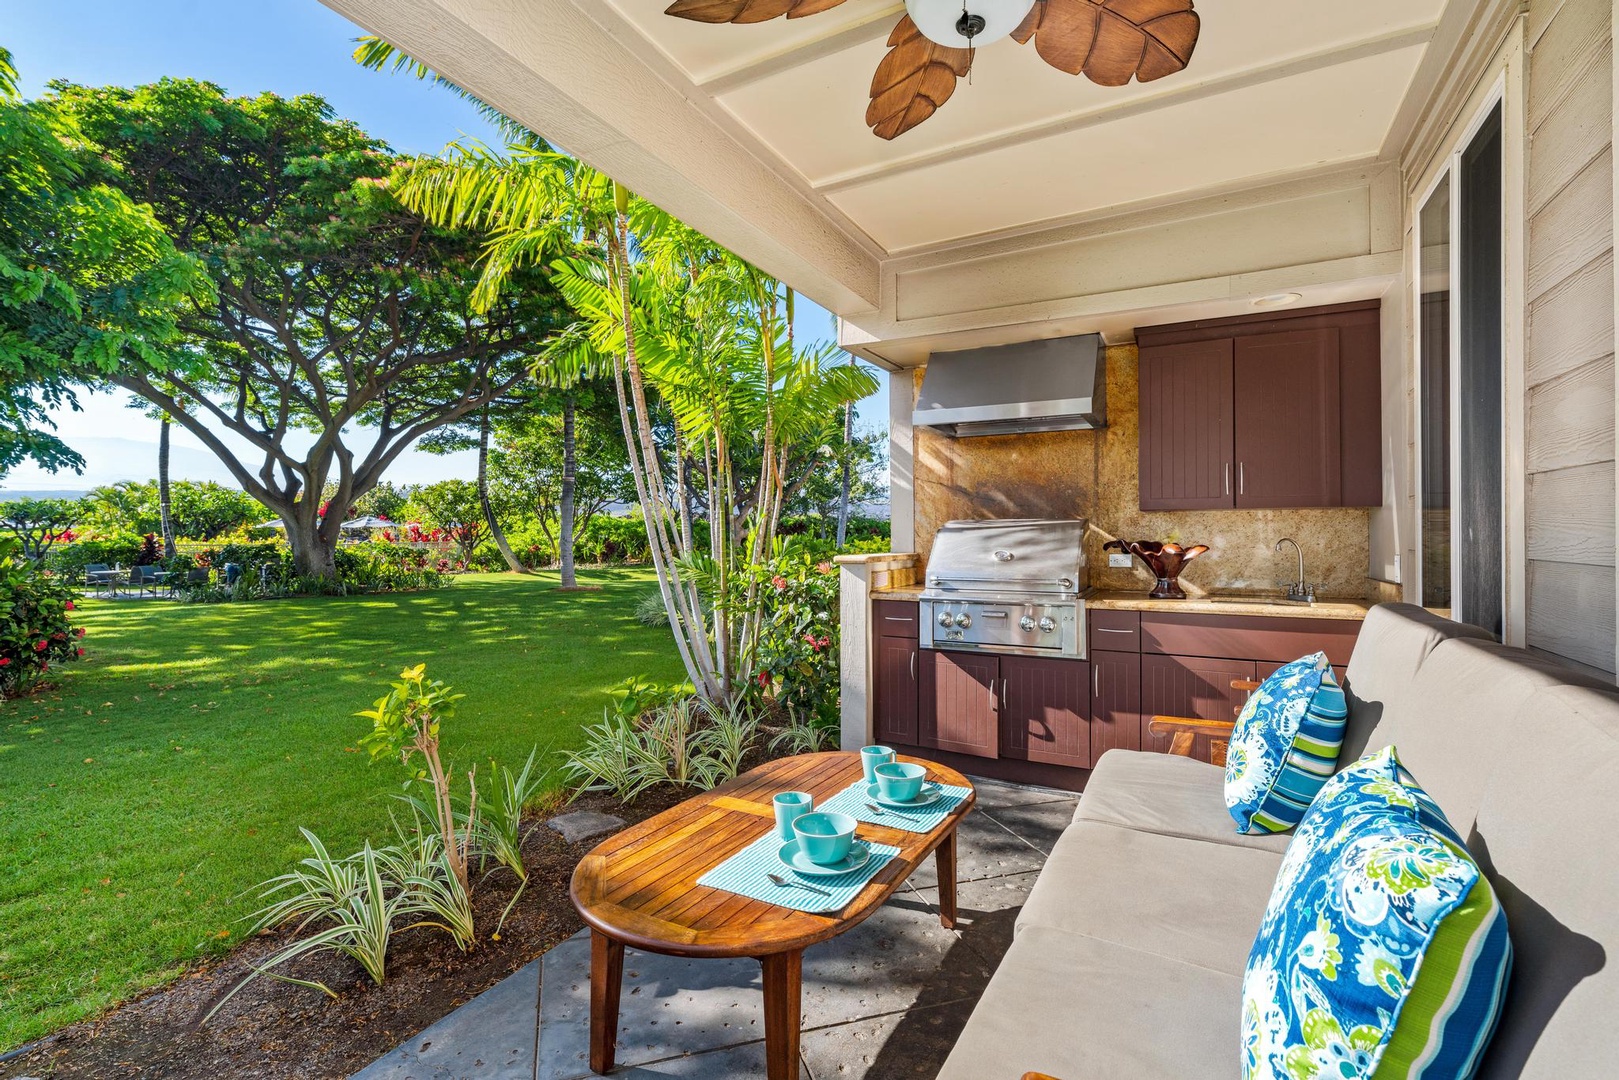 B1 Waikoloa Beach Villas. Includes Hilton Waikoloa Pool Pass for 2023 and Waikoloa Kings Club Golf Discounts